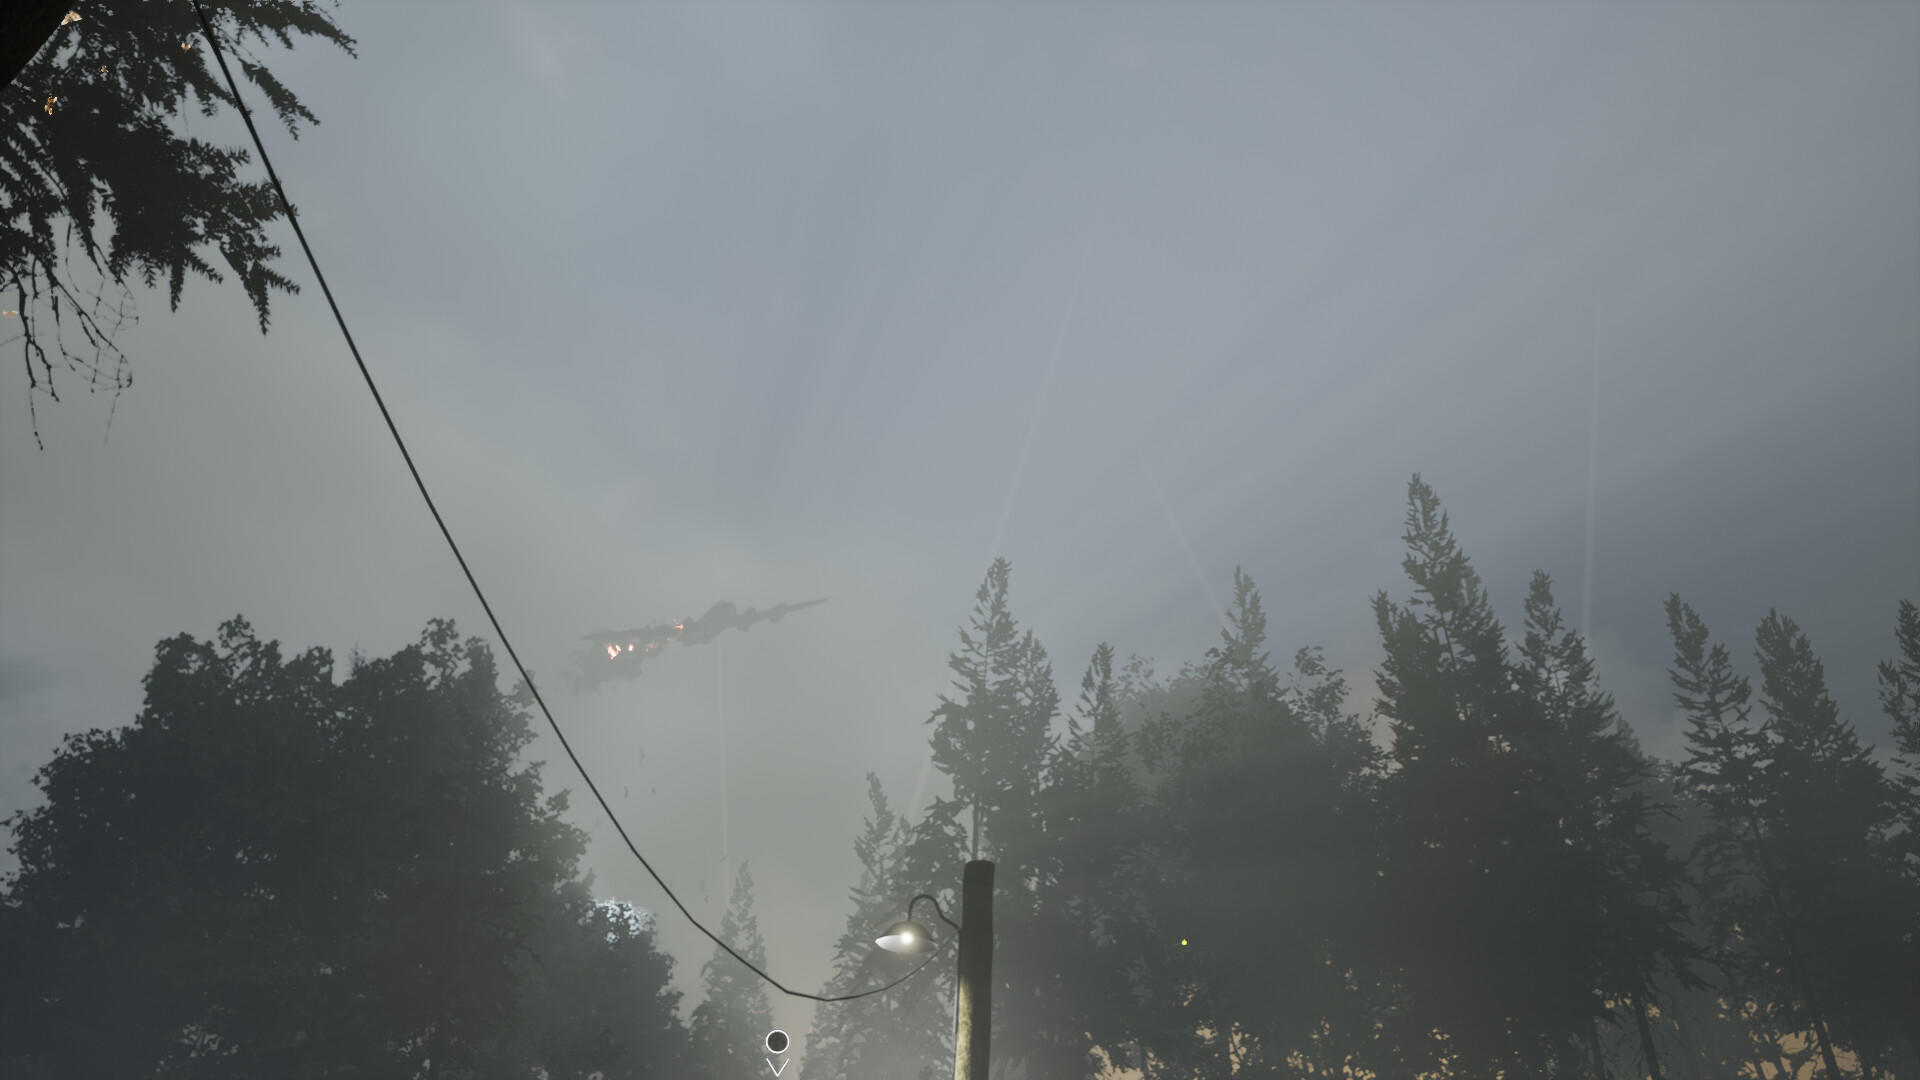 Aviators screenshot game